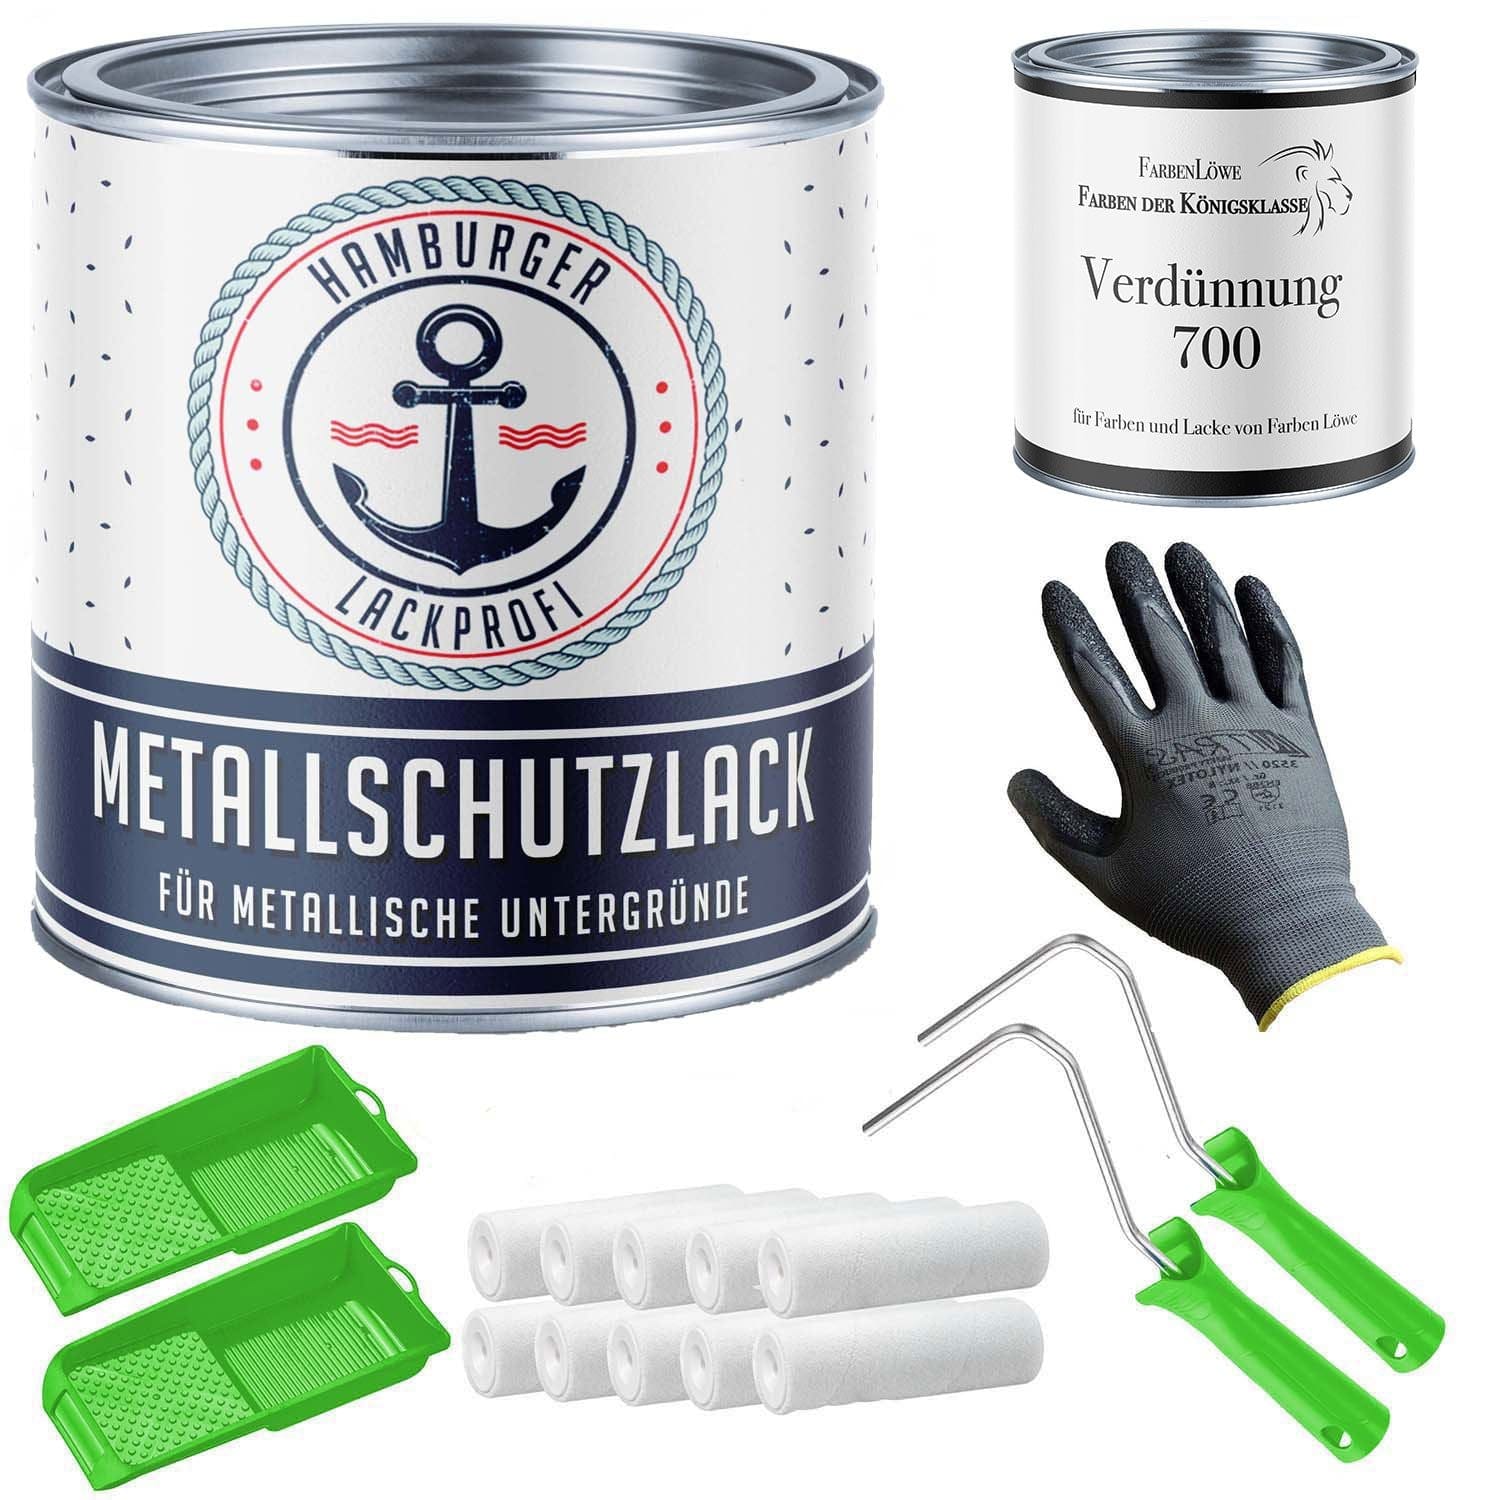 FARBENLÖWE Lacke & Beschichtungen Hamburger Lack-Profi Metallschutzlack in Smaragdgrün RAL 6001 mit Lackierset (X300) & Verdünnung (1 L) - 30% Sparangebot